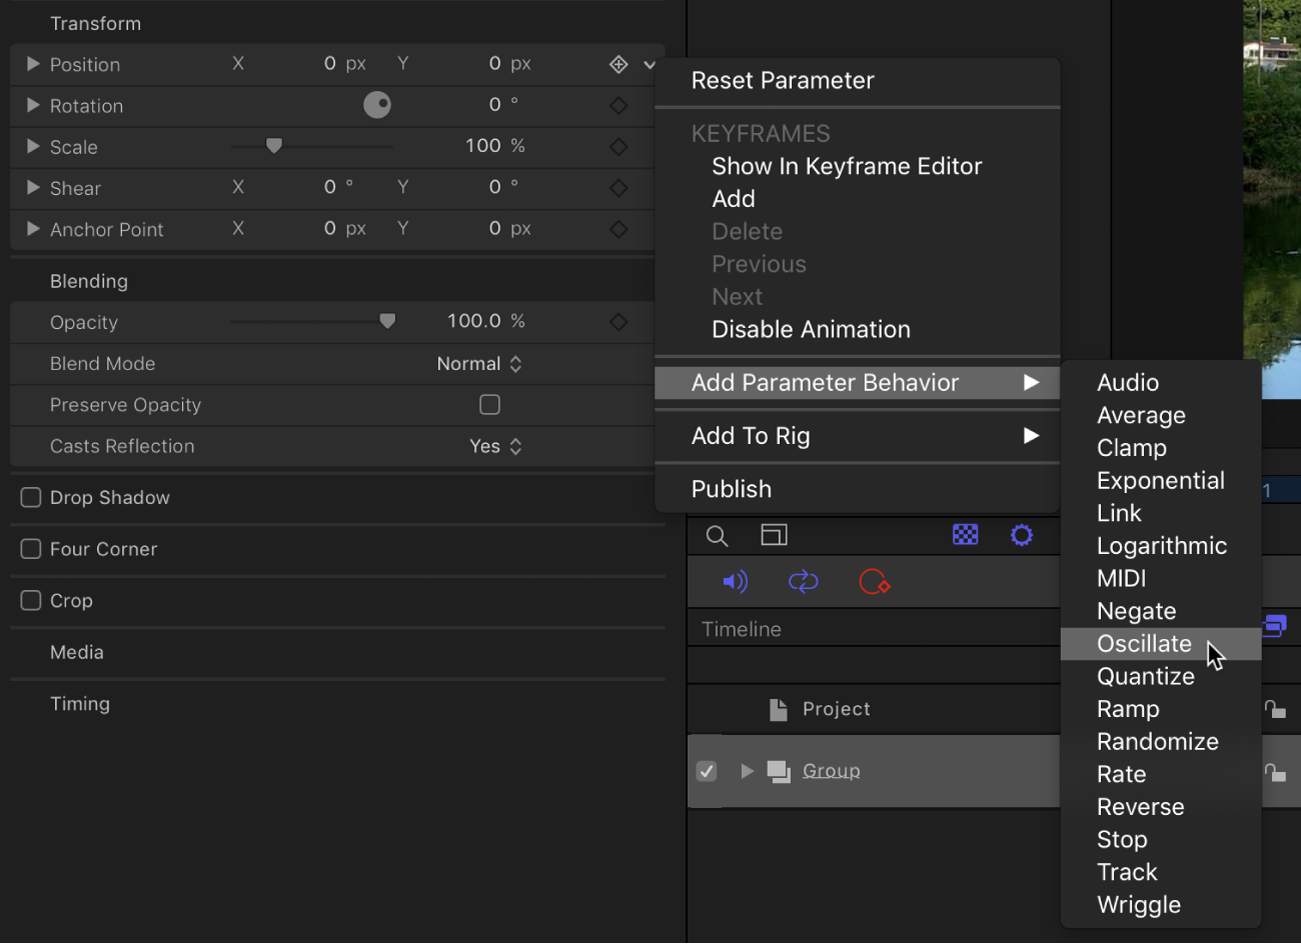 Add Parameter submenu in the Animation menu